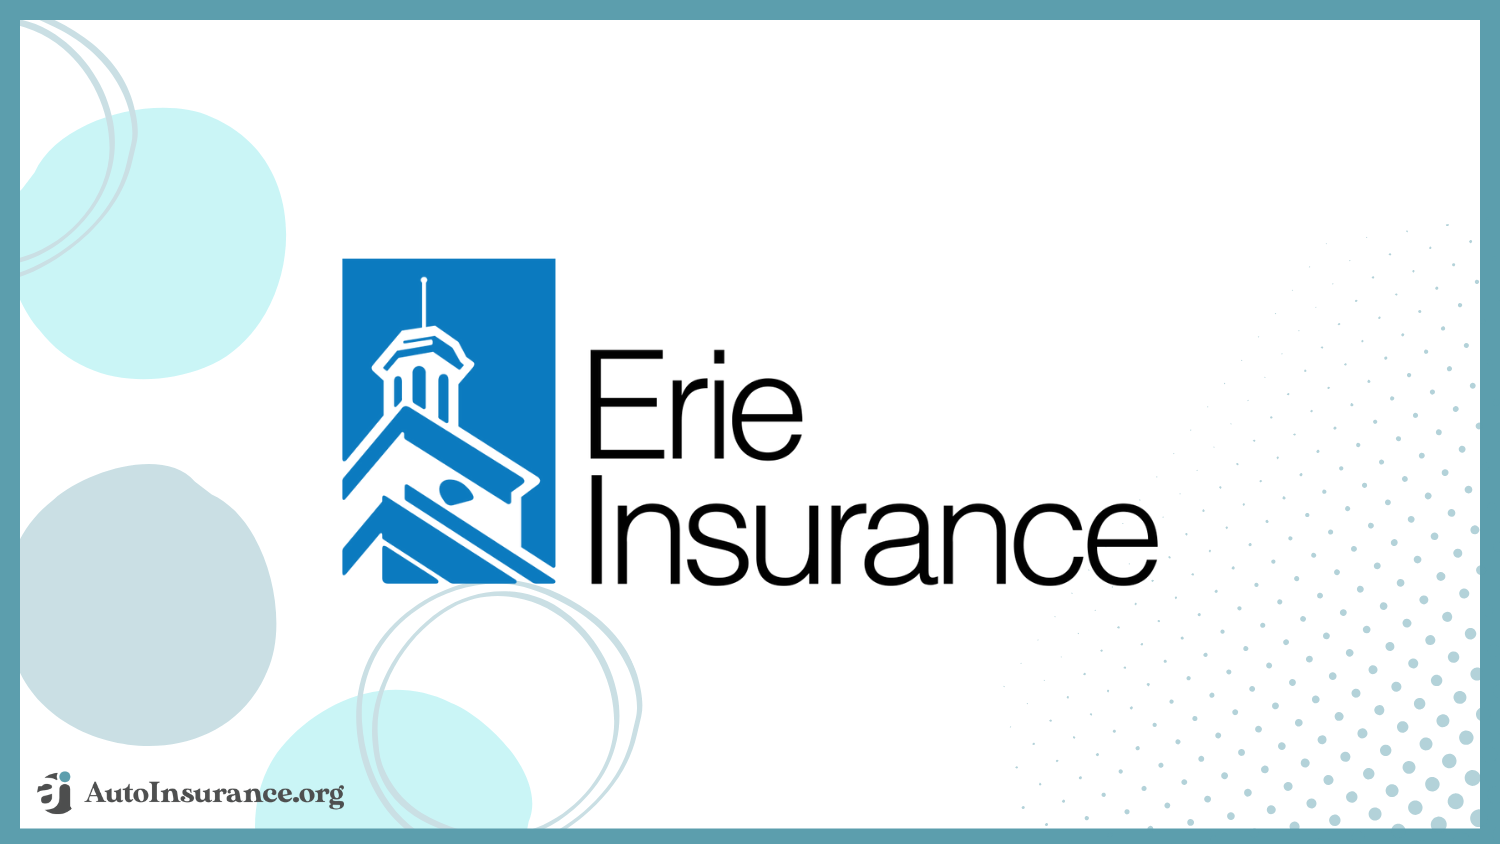 Erie insurance